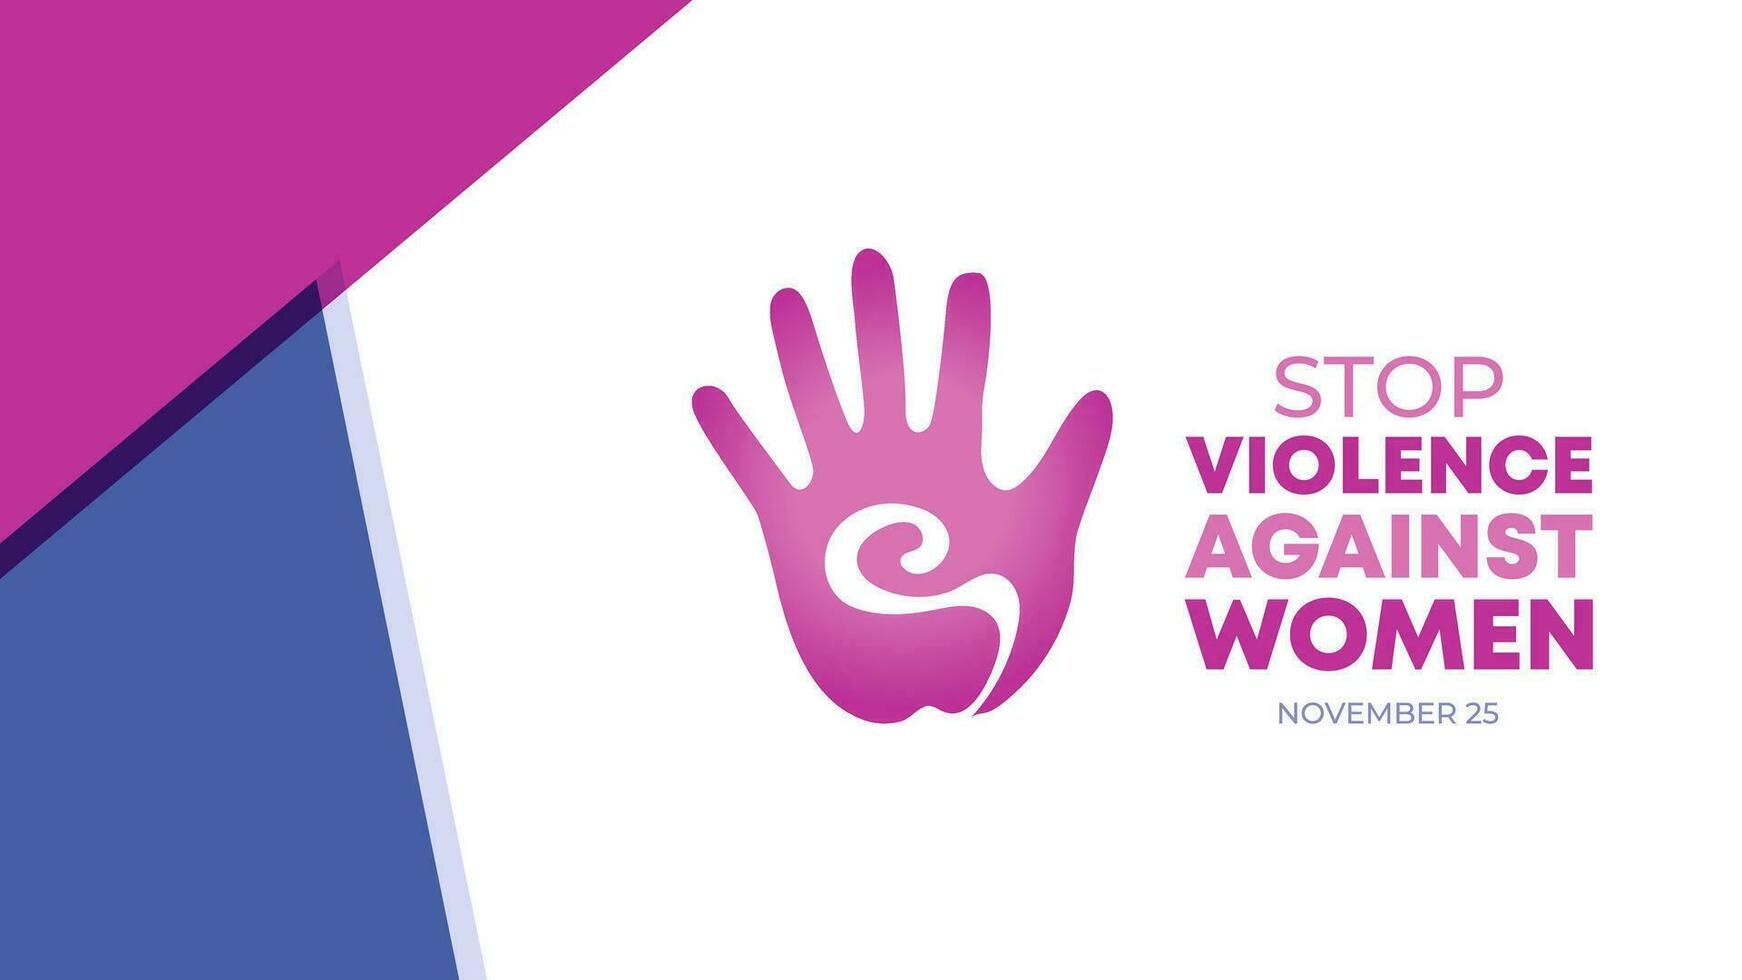 internacional día para el eliminación de violencia en contra mujer. diseño para presentaciones, antecedentes, pancartas, carteles, cubre vector